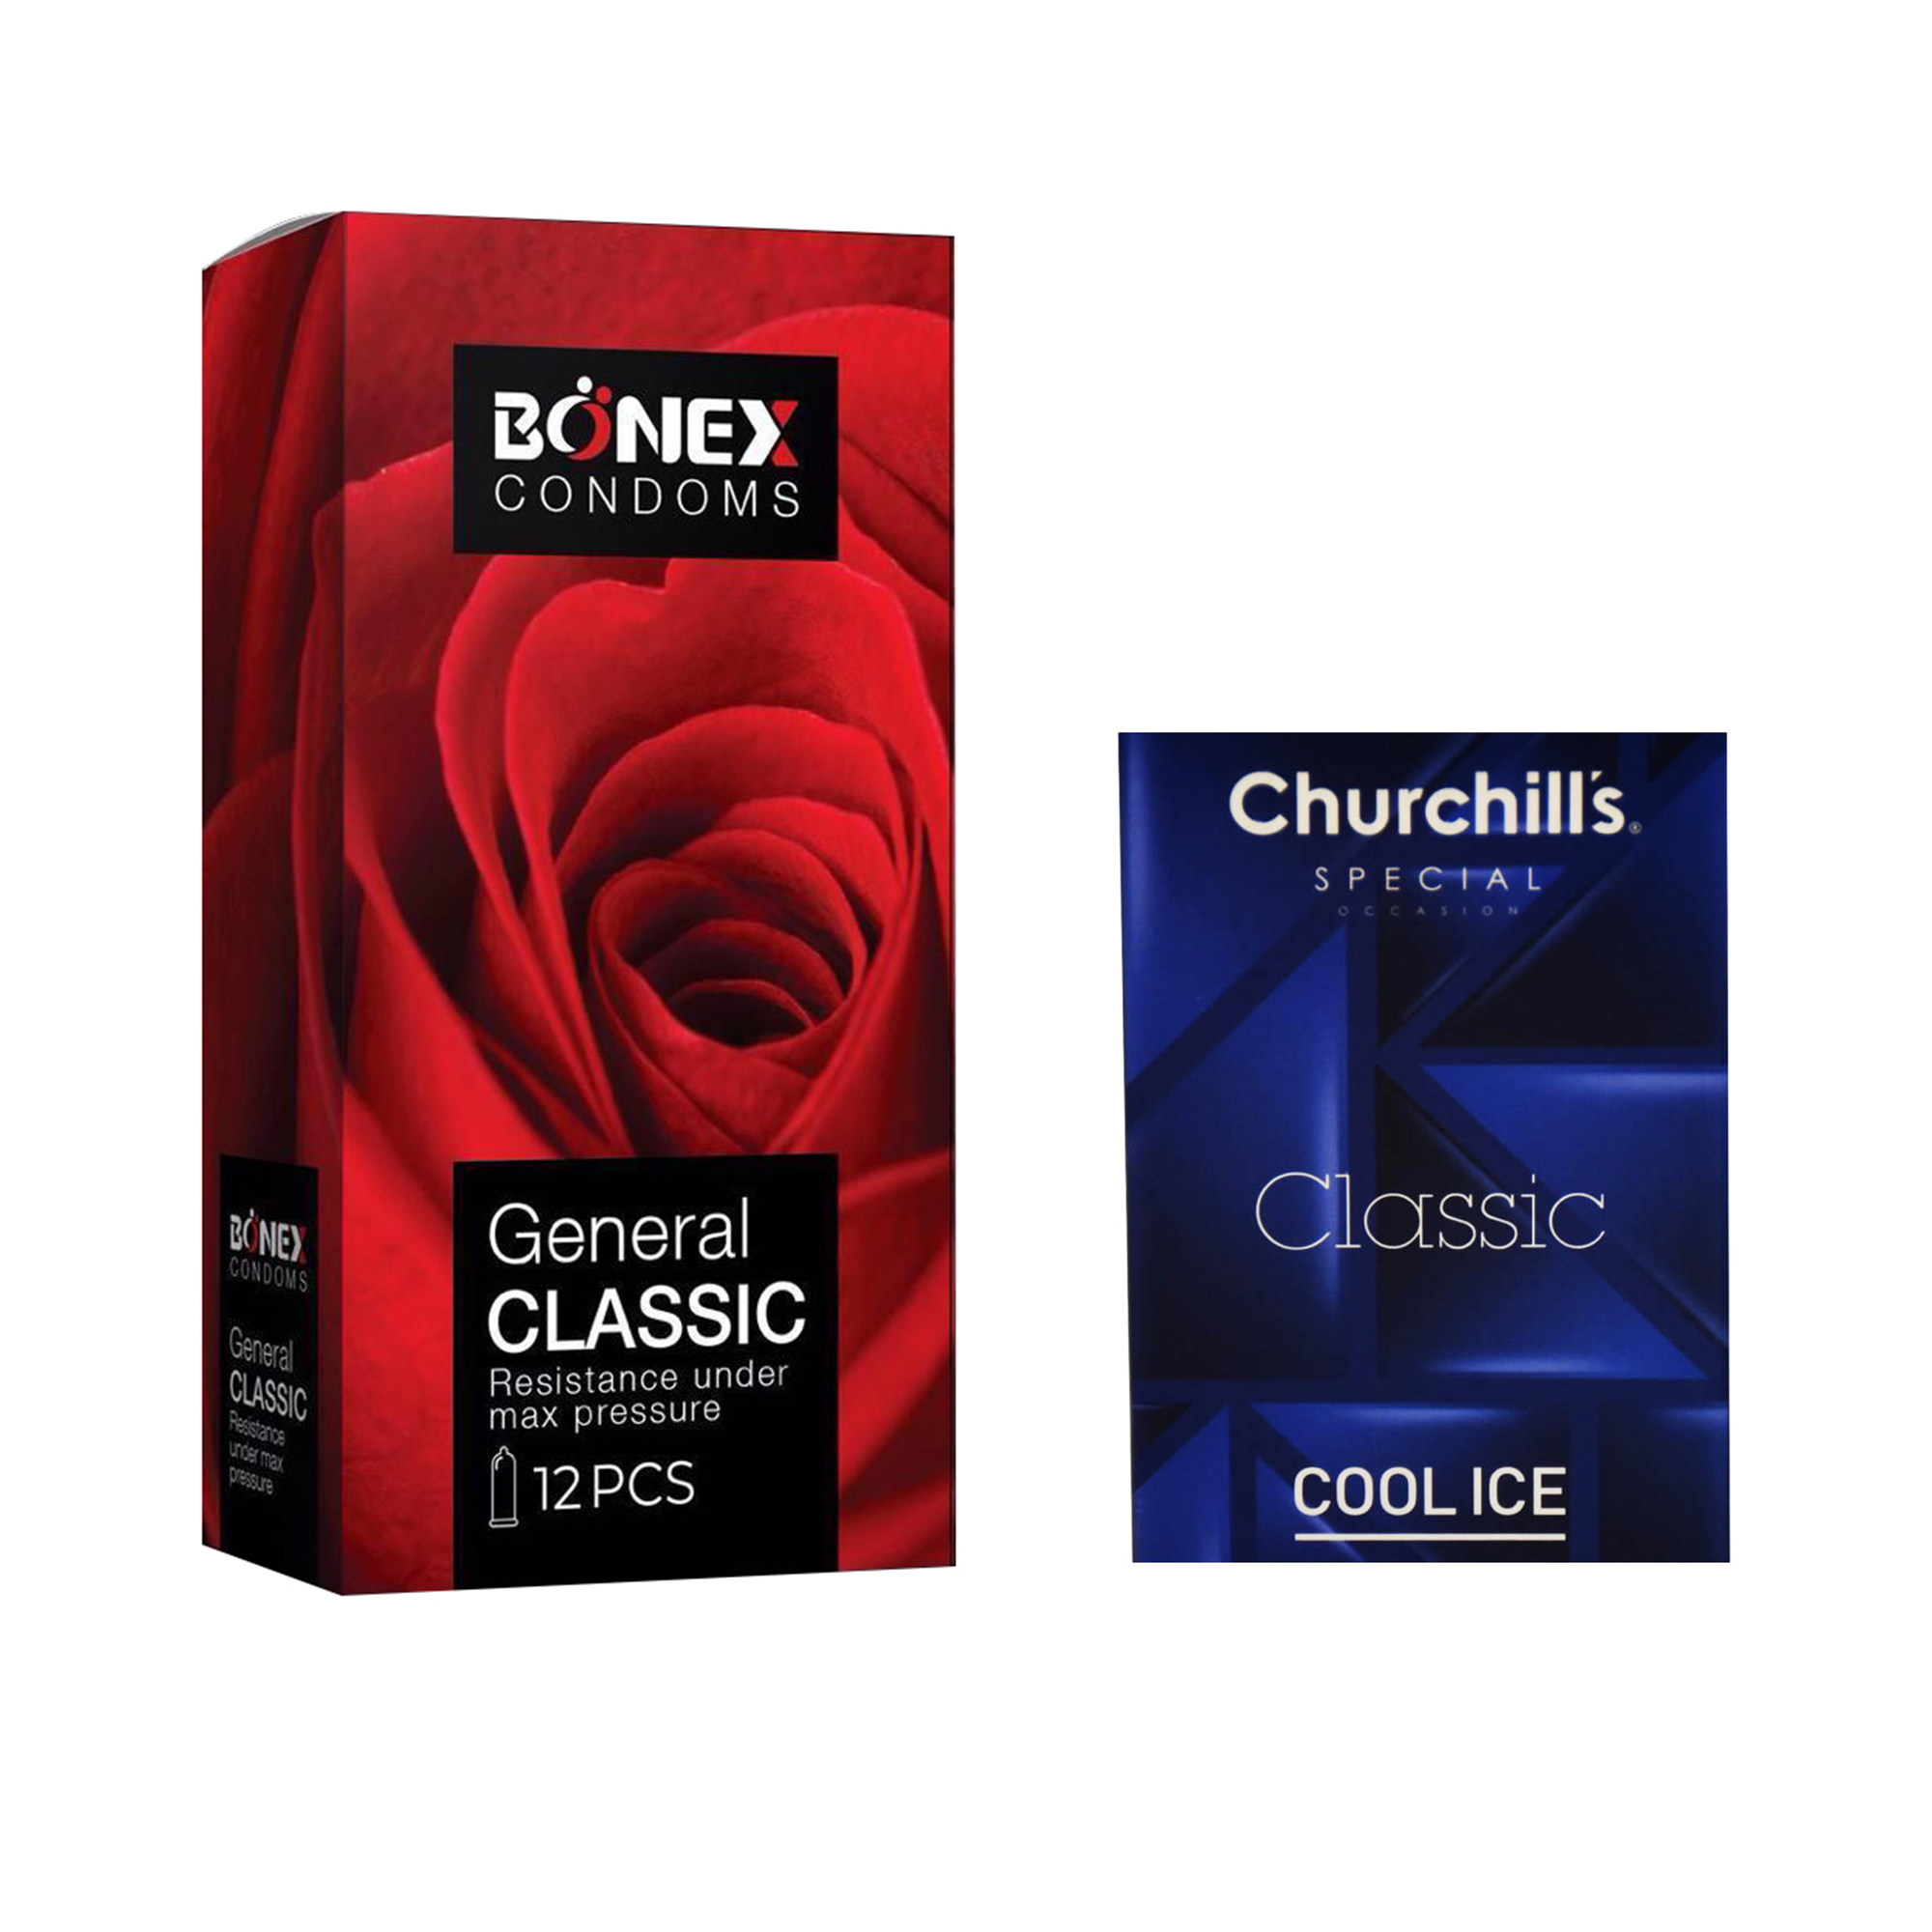 کاندوم بونکس مدل General Classic بسته 12 عددی به همراه کاندوم چرچیلز مدل Cool Ice بسته 3 عددی